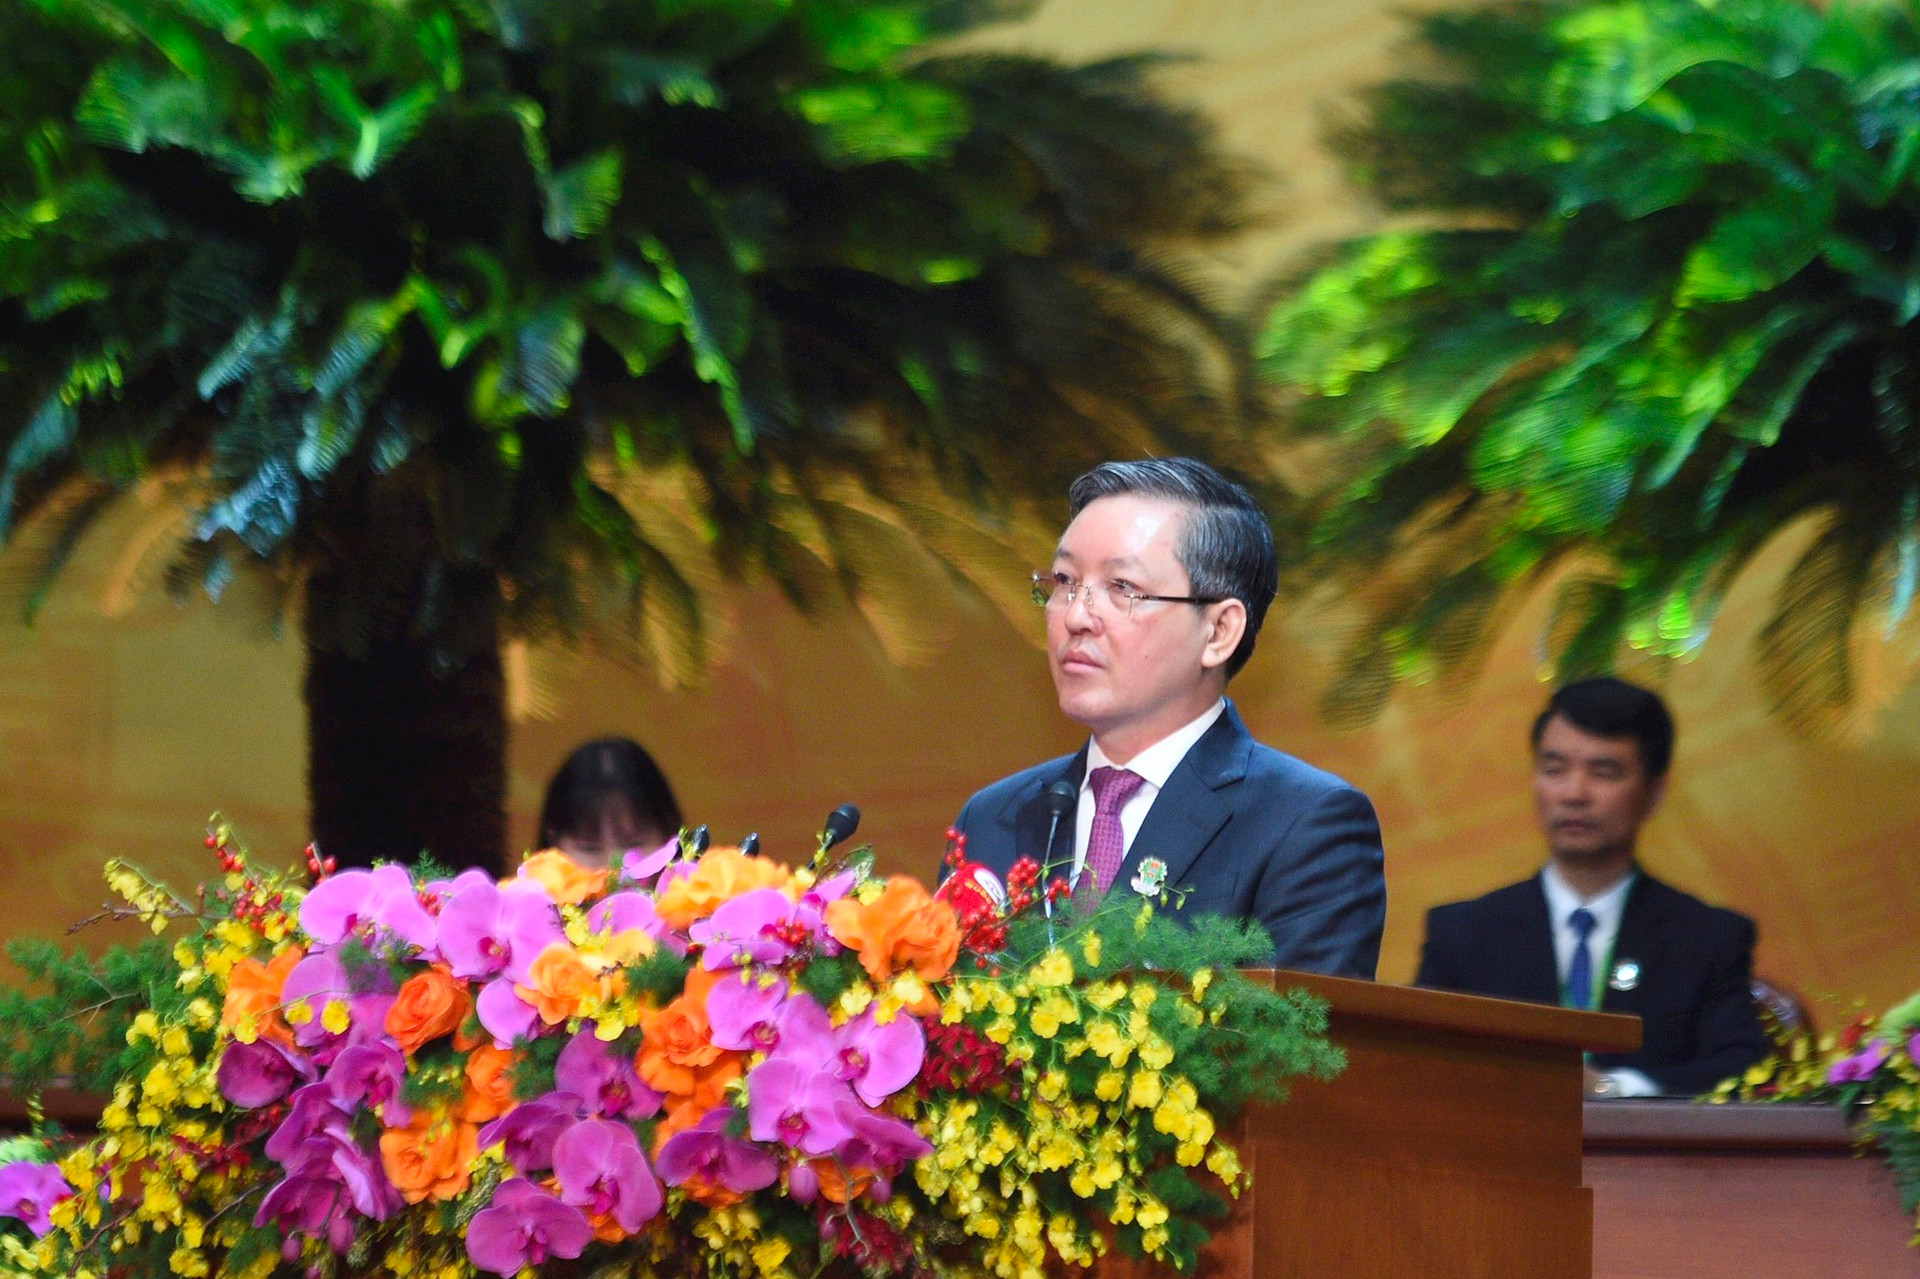 Ông Lương Quốc Đoàn tái đắc cử Chủ tịch Trung ương Hội Nông dân Việt Nam